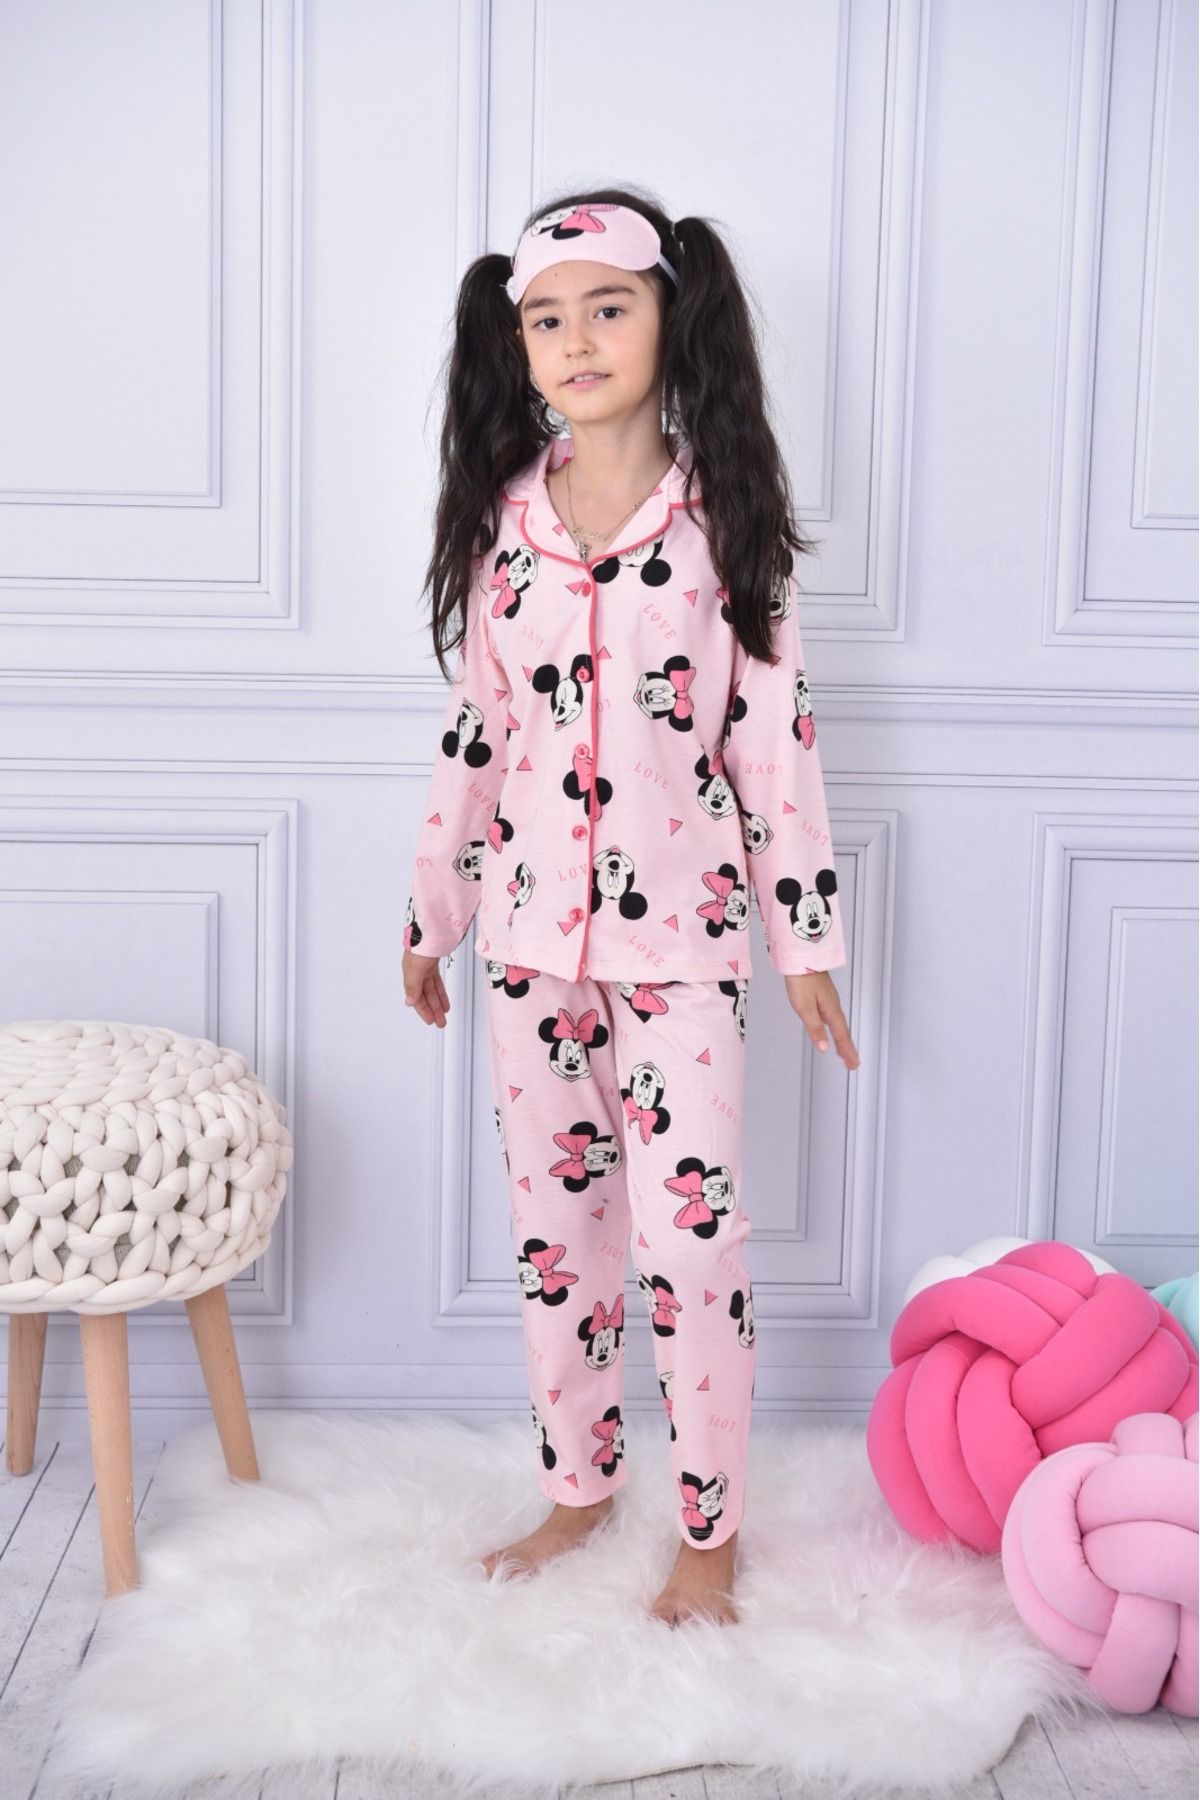 ARCAN Kız Çocuk Pembe Kız Pijama Takımı Ve Göz Bandı